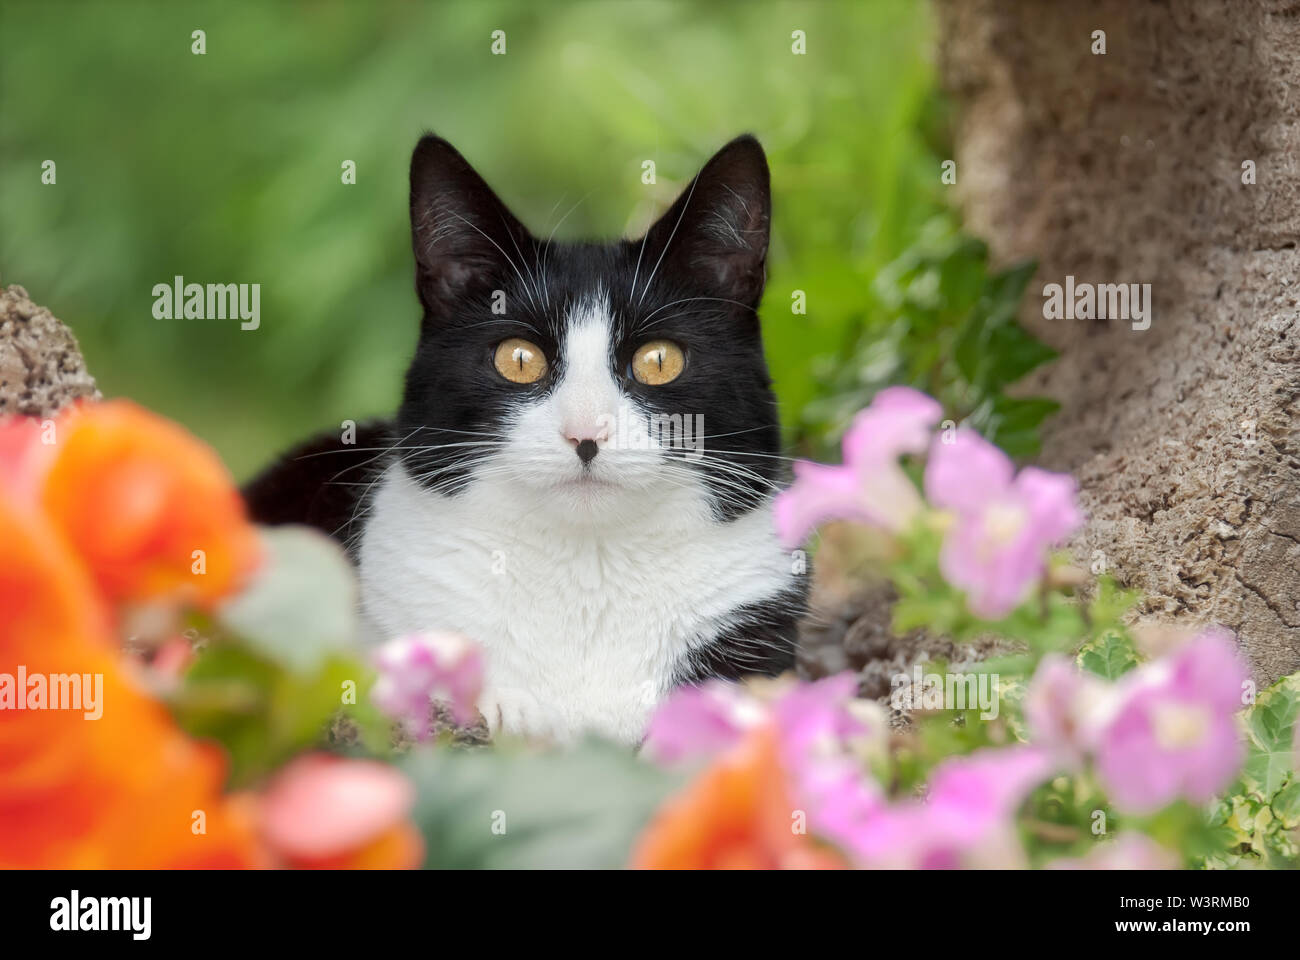 Cute cat, tuxedo pattern in bianco e nero bicolor, European Shorthair, ponendo curiosamente con indiscreti occhi gialli in un colorato giardino fiorito, Germania Foto Stock